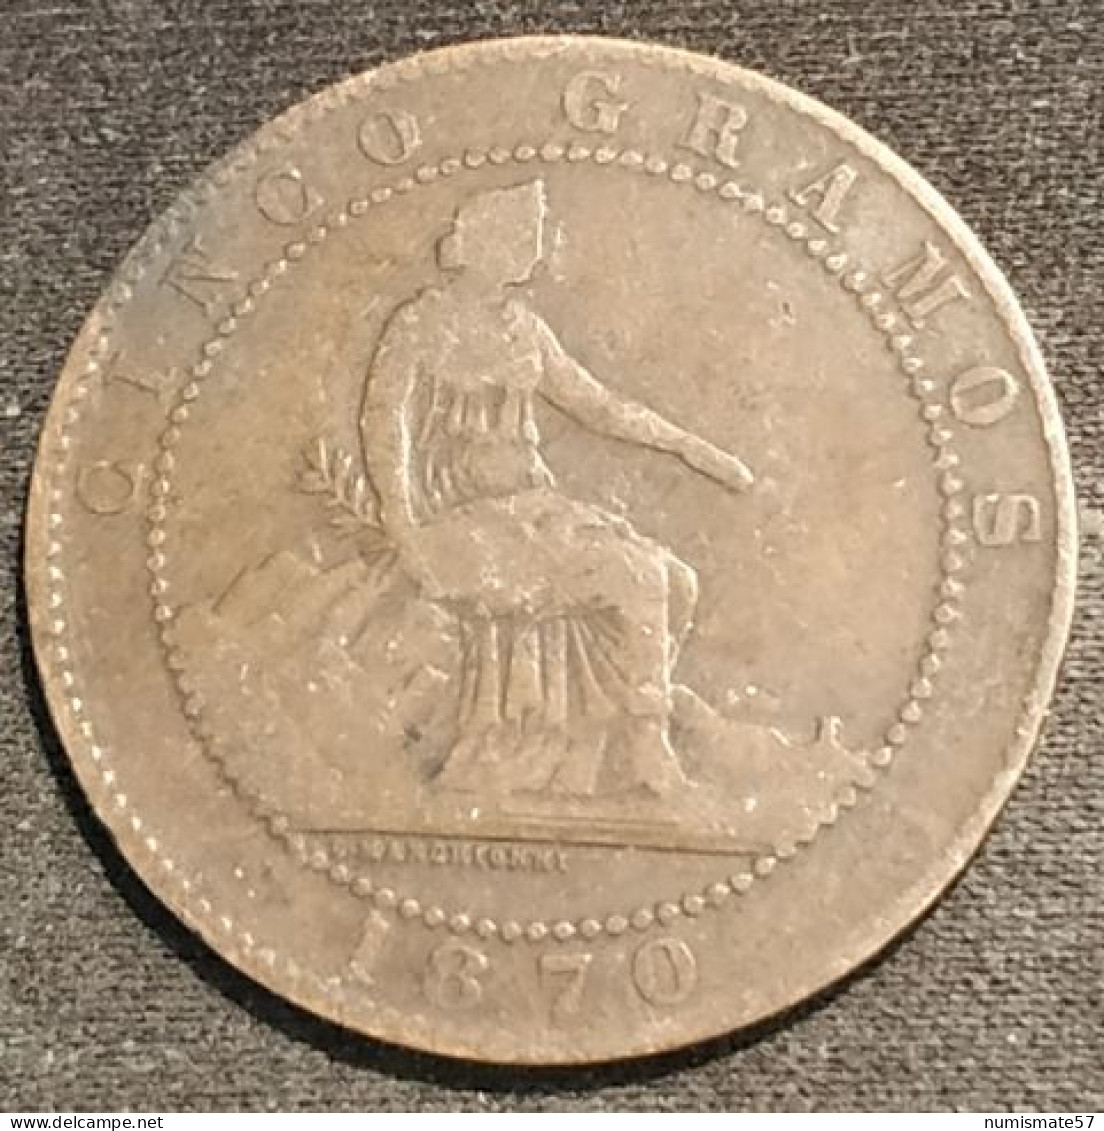 ESPAGNE - ESPANA - SPAIN - 5 CENTIMOS 1870 - Gouvernement Provisoire - KM 662 - ( CINCOS GRAMOS ) - First Minting